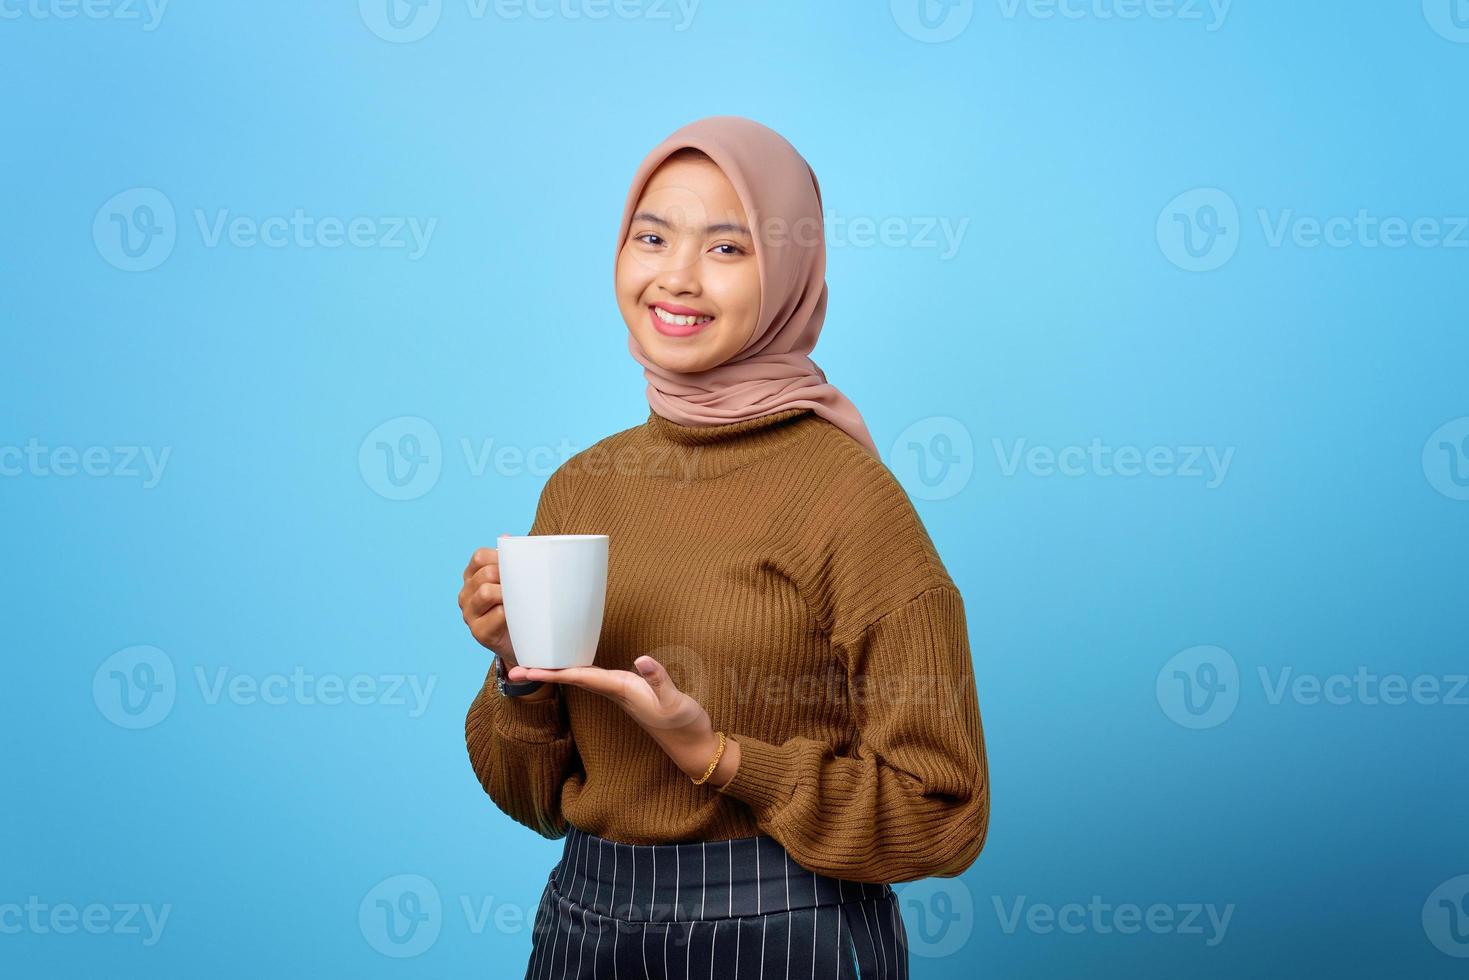 mooie jonge aziatische vrouw die mok vasthoudt en thee drinkt op blauwe achtergrond foto